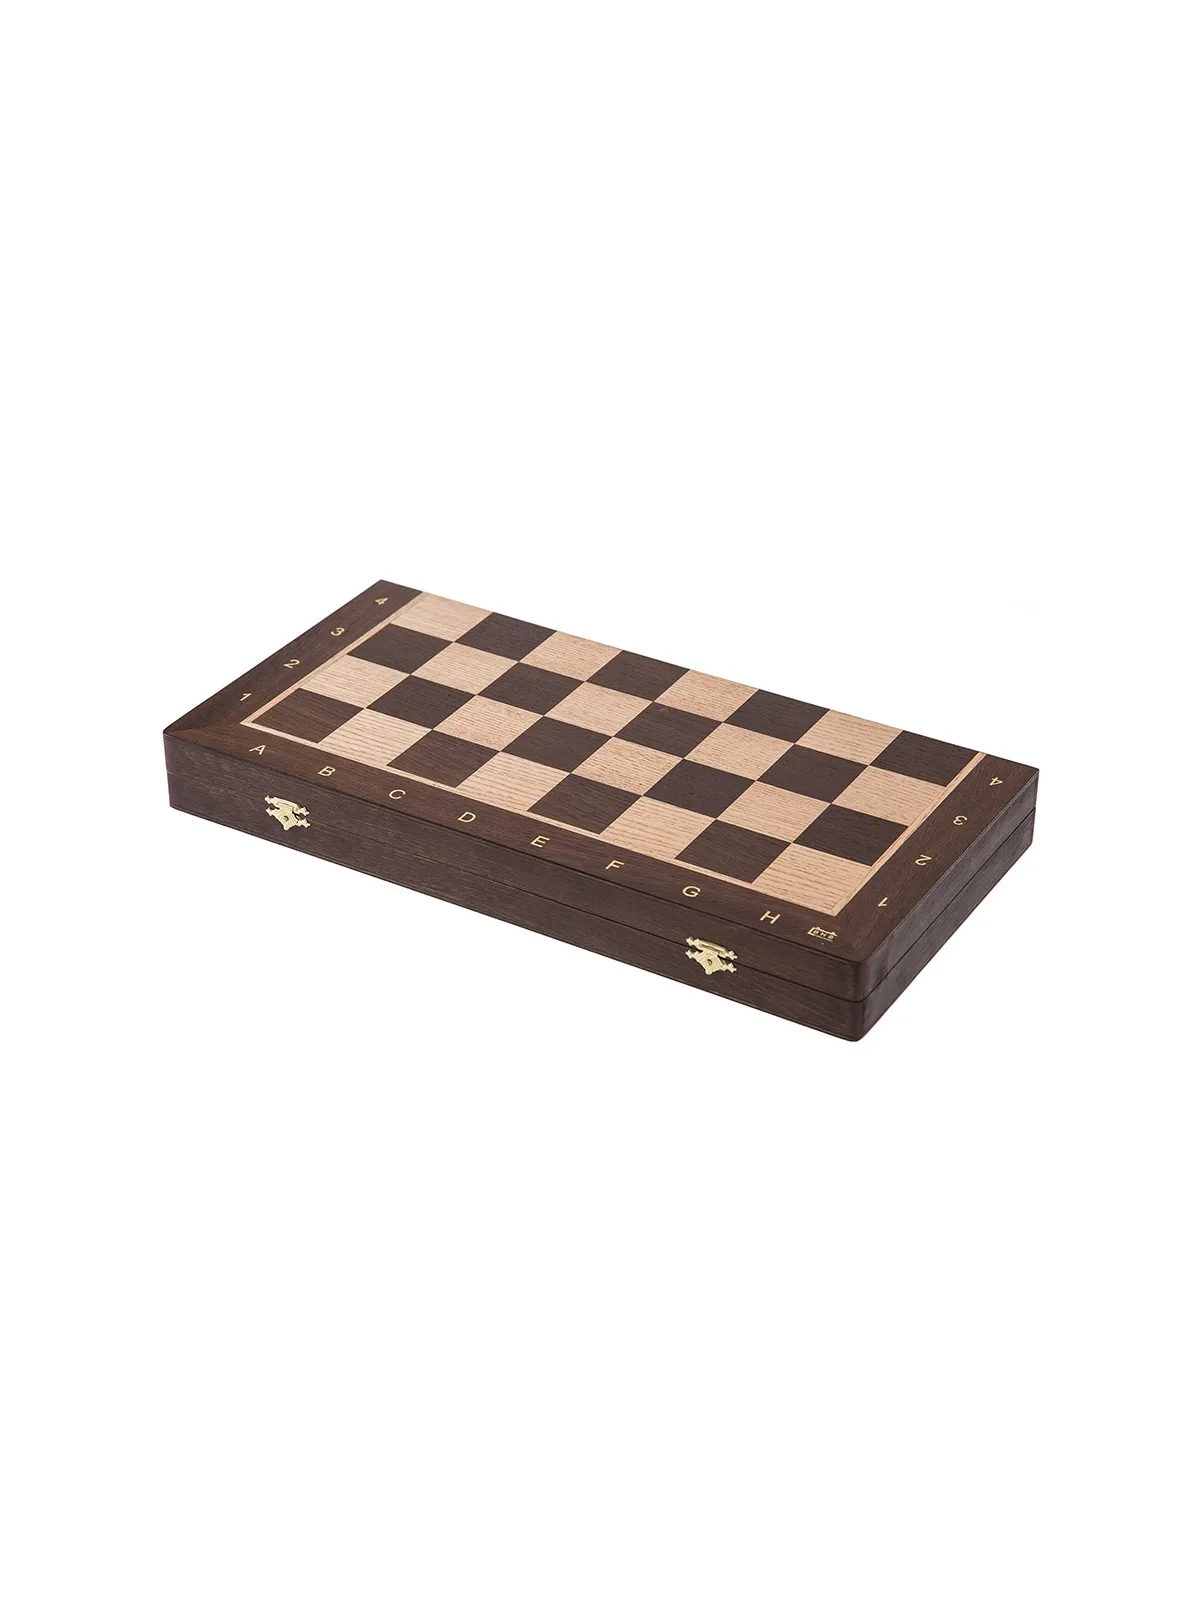 Chess Tournament No 4 - Oak